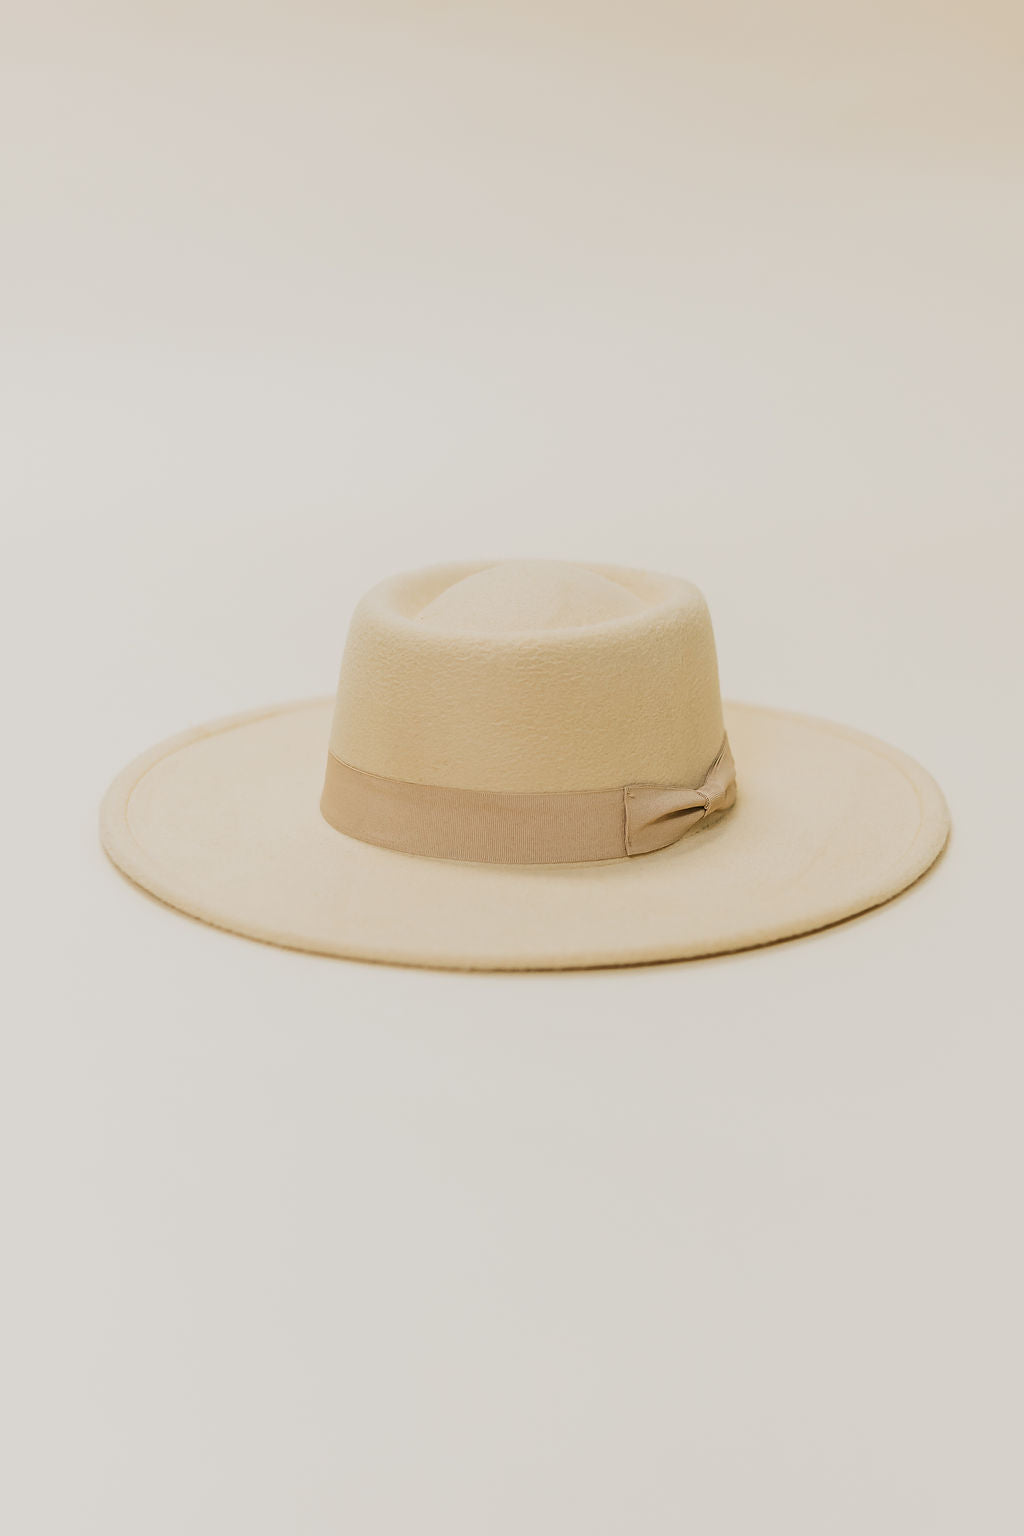 Woodstock Hat - Ivory